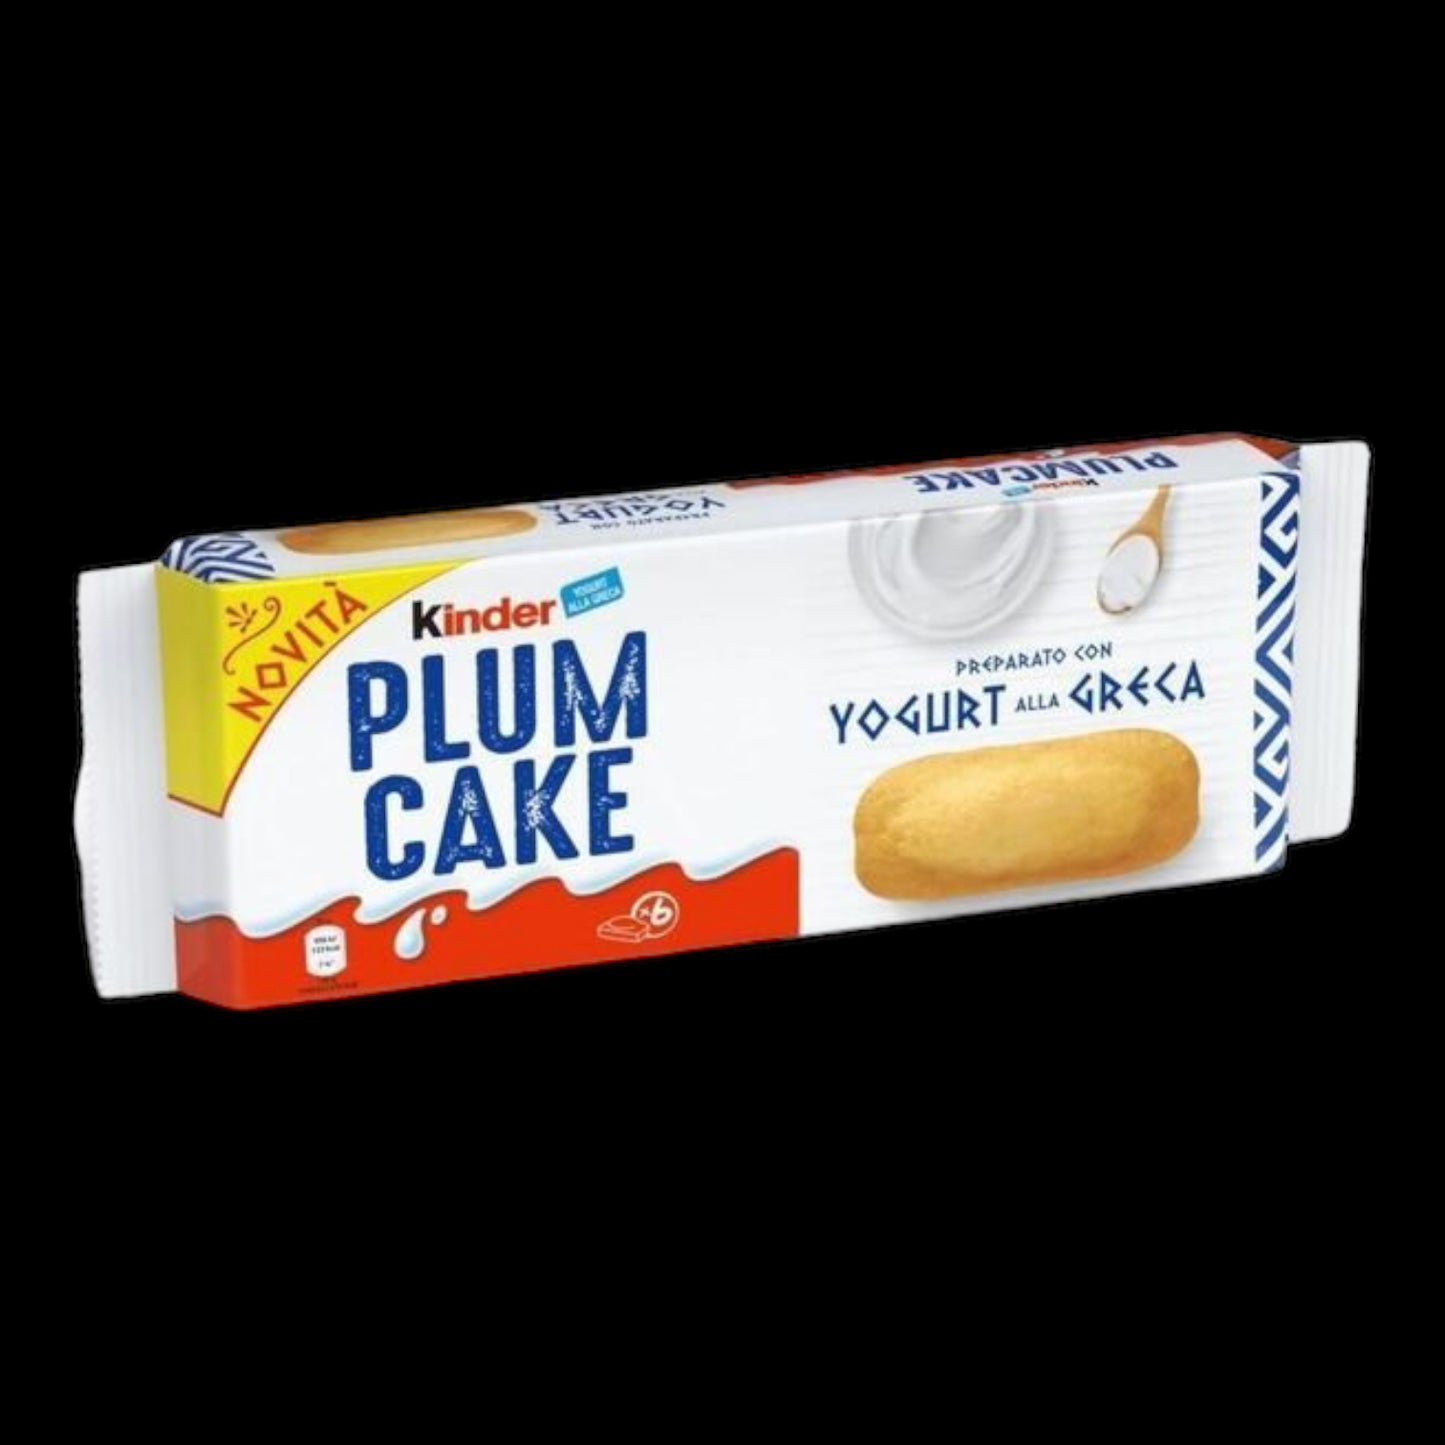 Kinder Plum Cake Yogurt alla Greca 192g